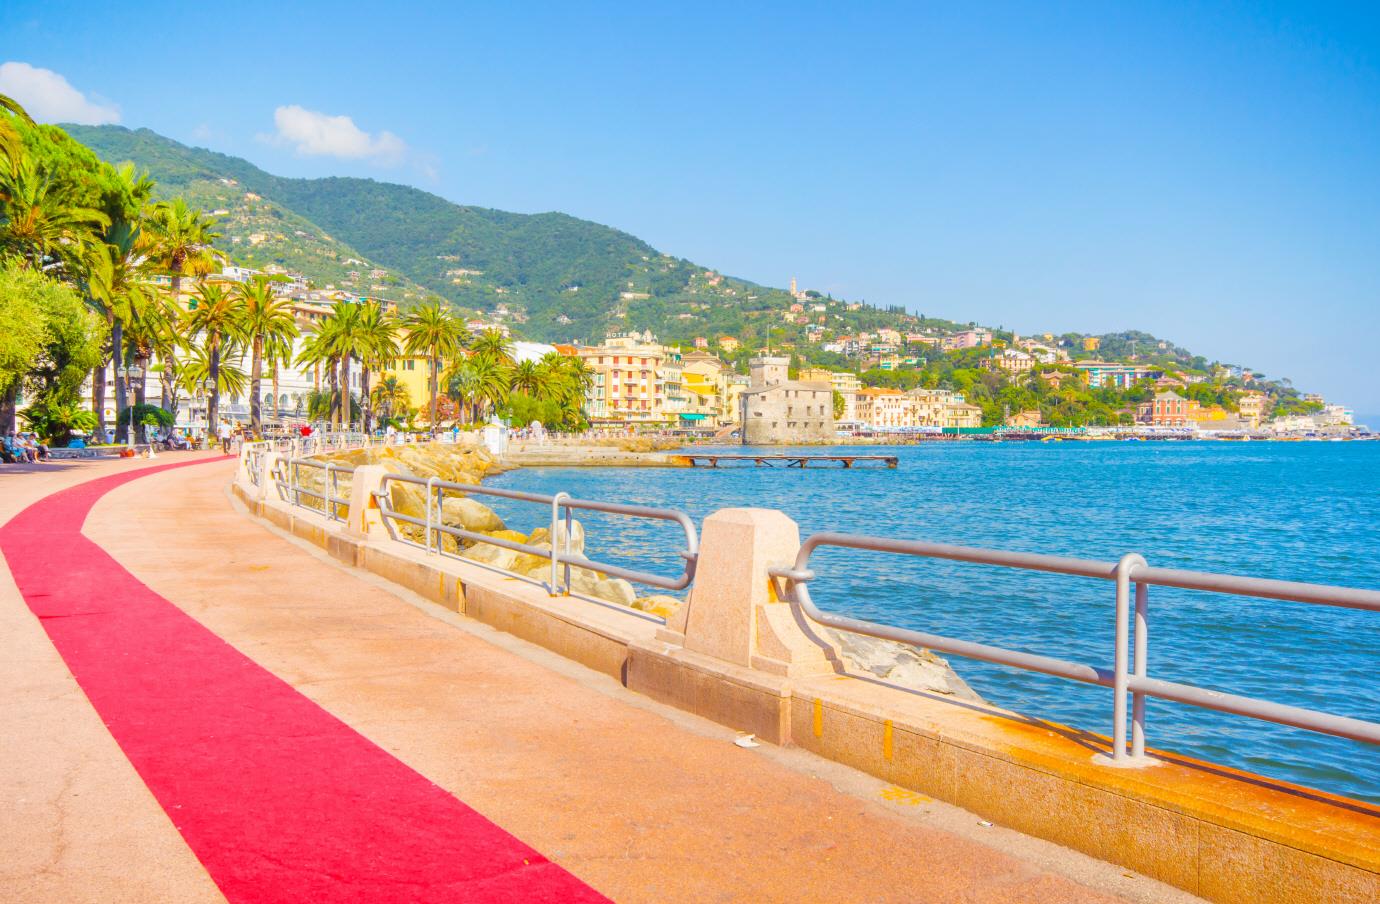 레드 카펫길  The Red carpet way(Rapallo-Santa Margherita-Portofino)